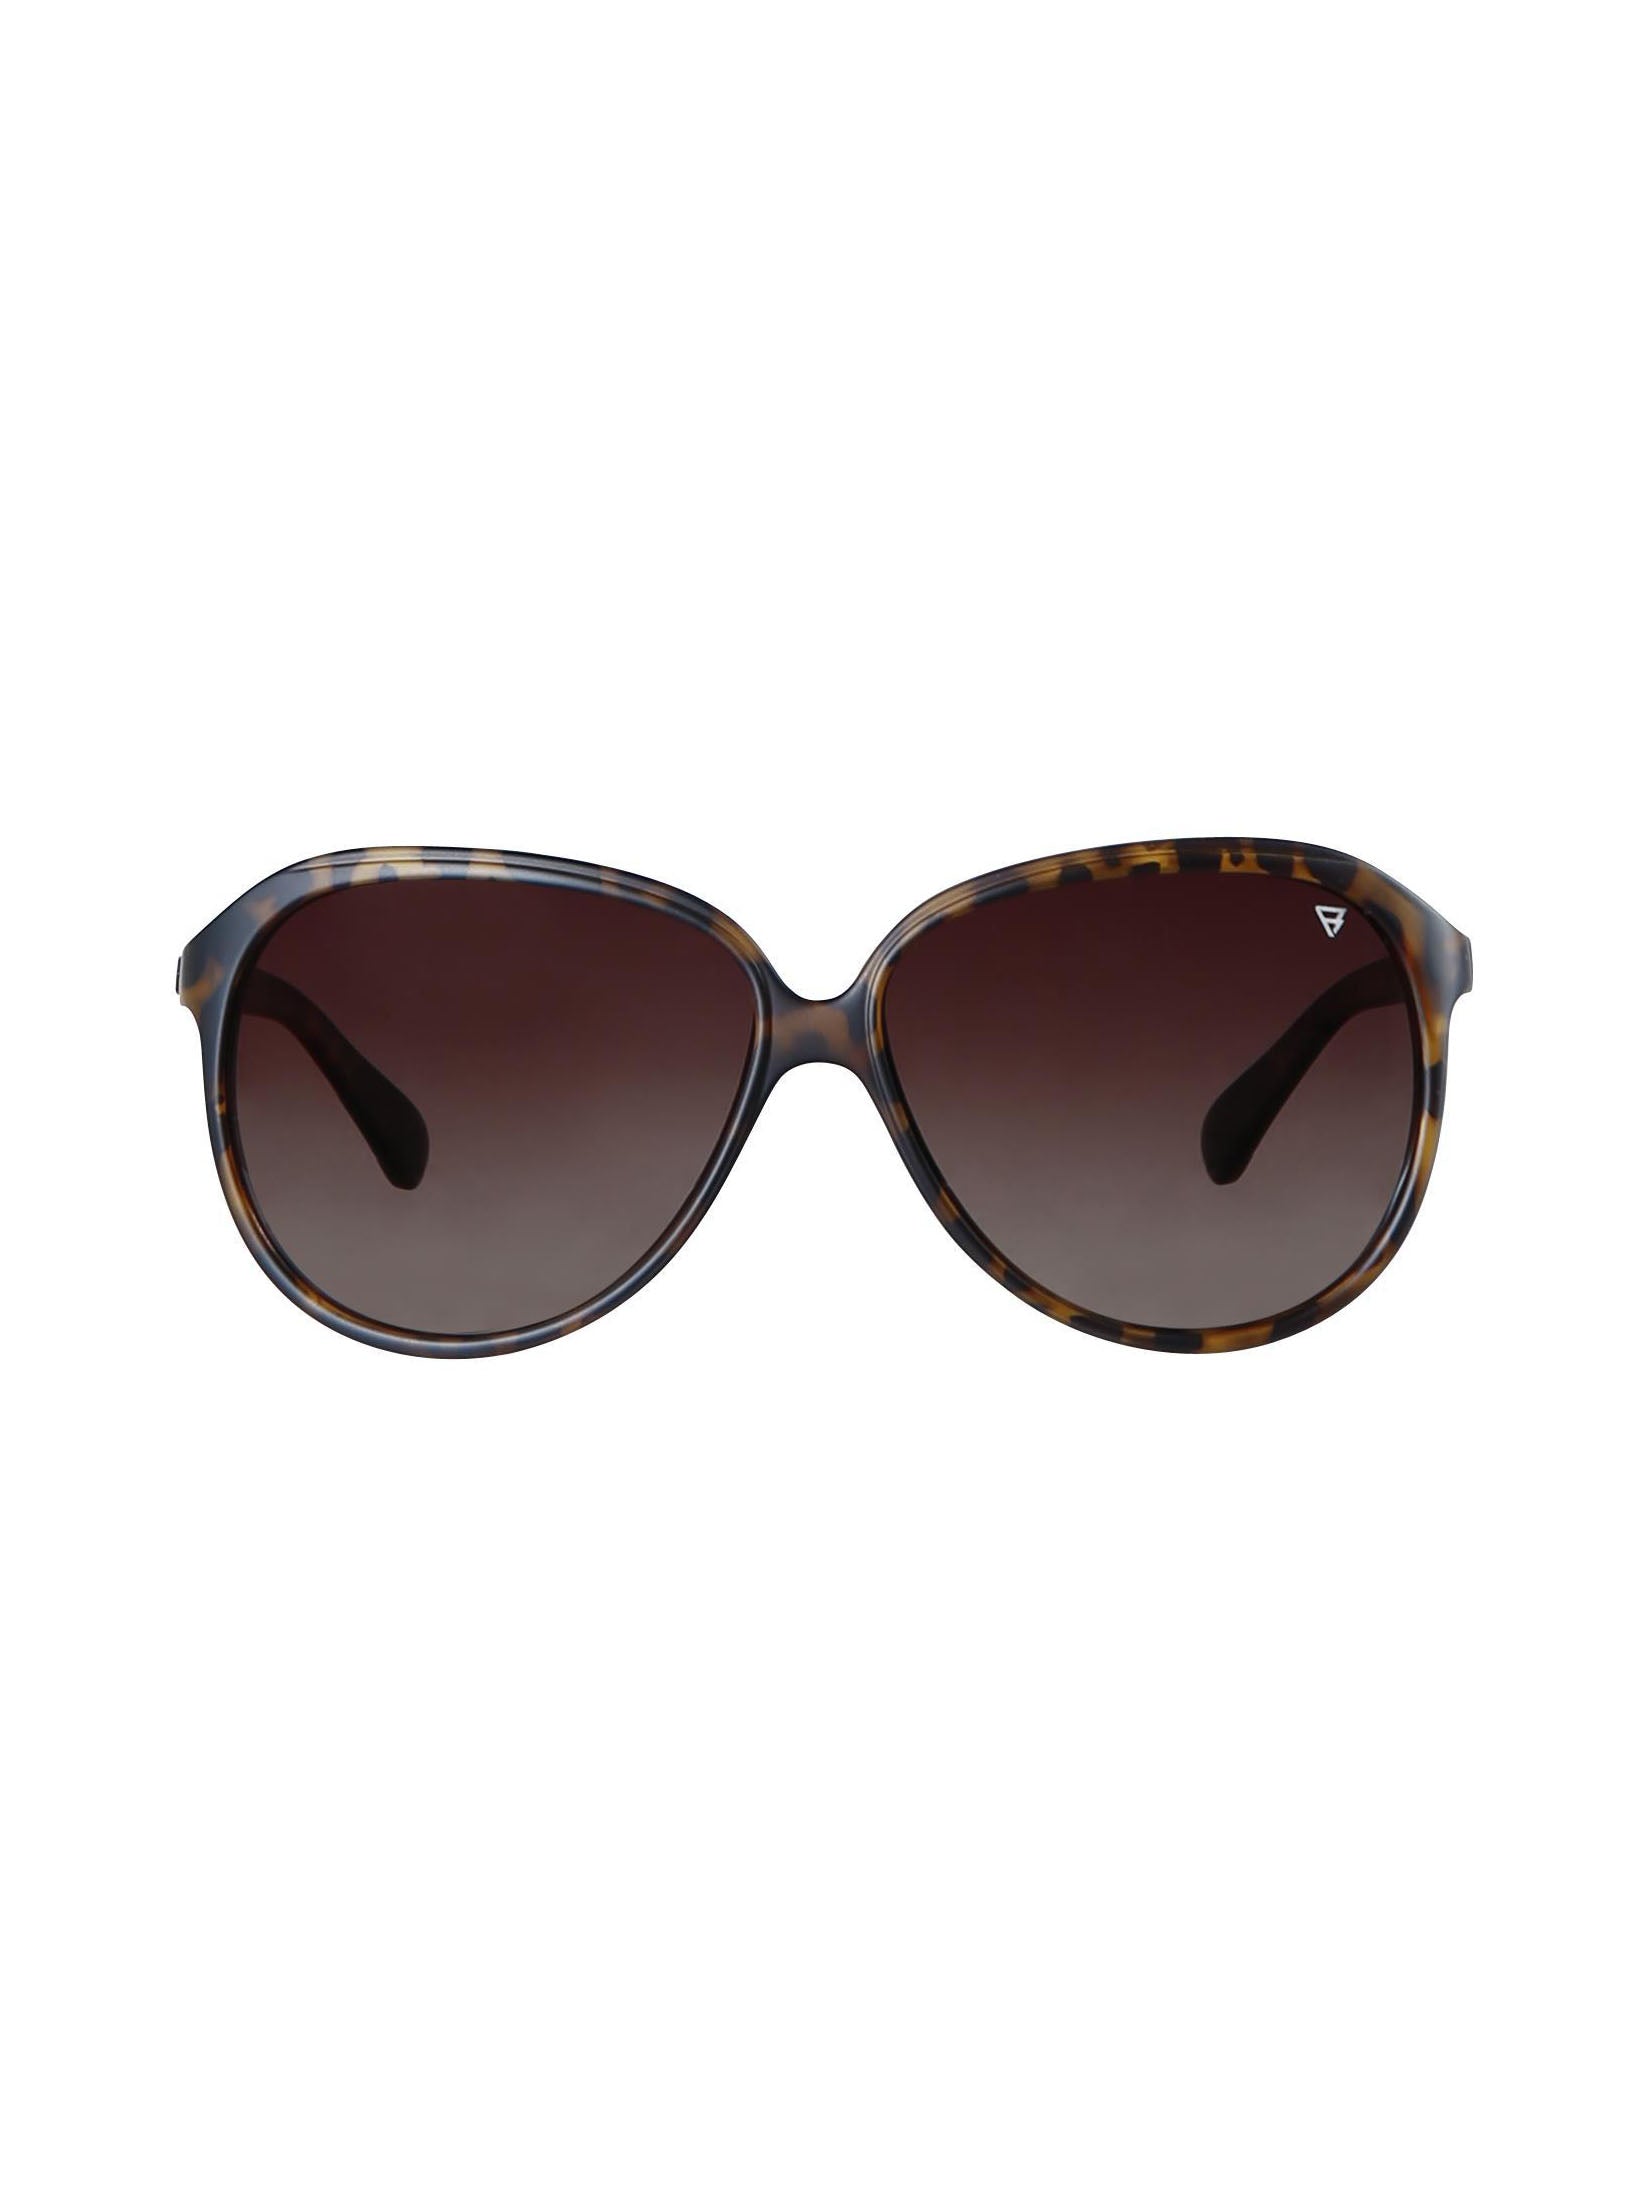 Hurange 2 Women Sunglasses | Brown